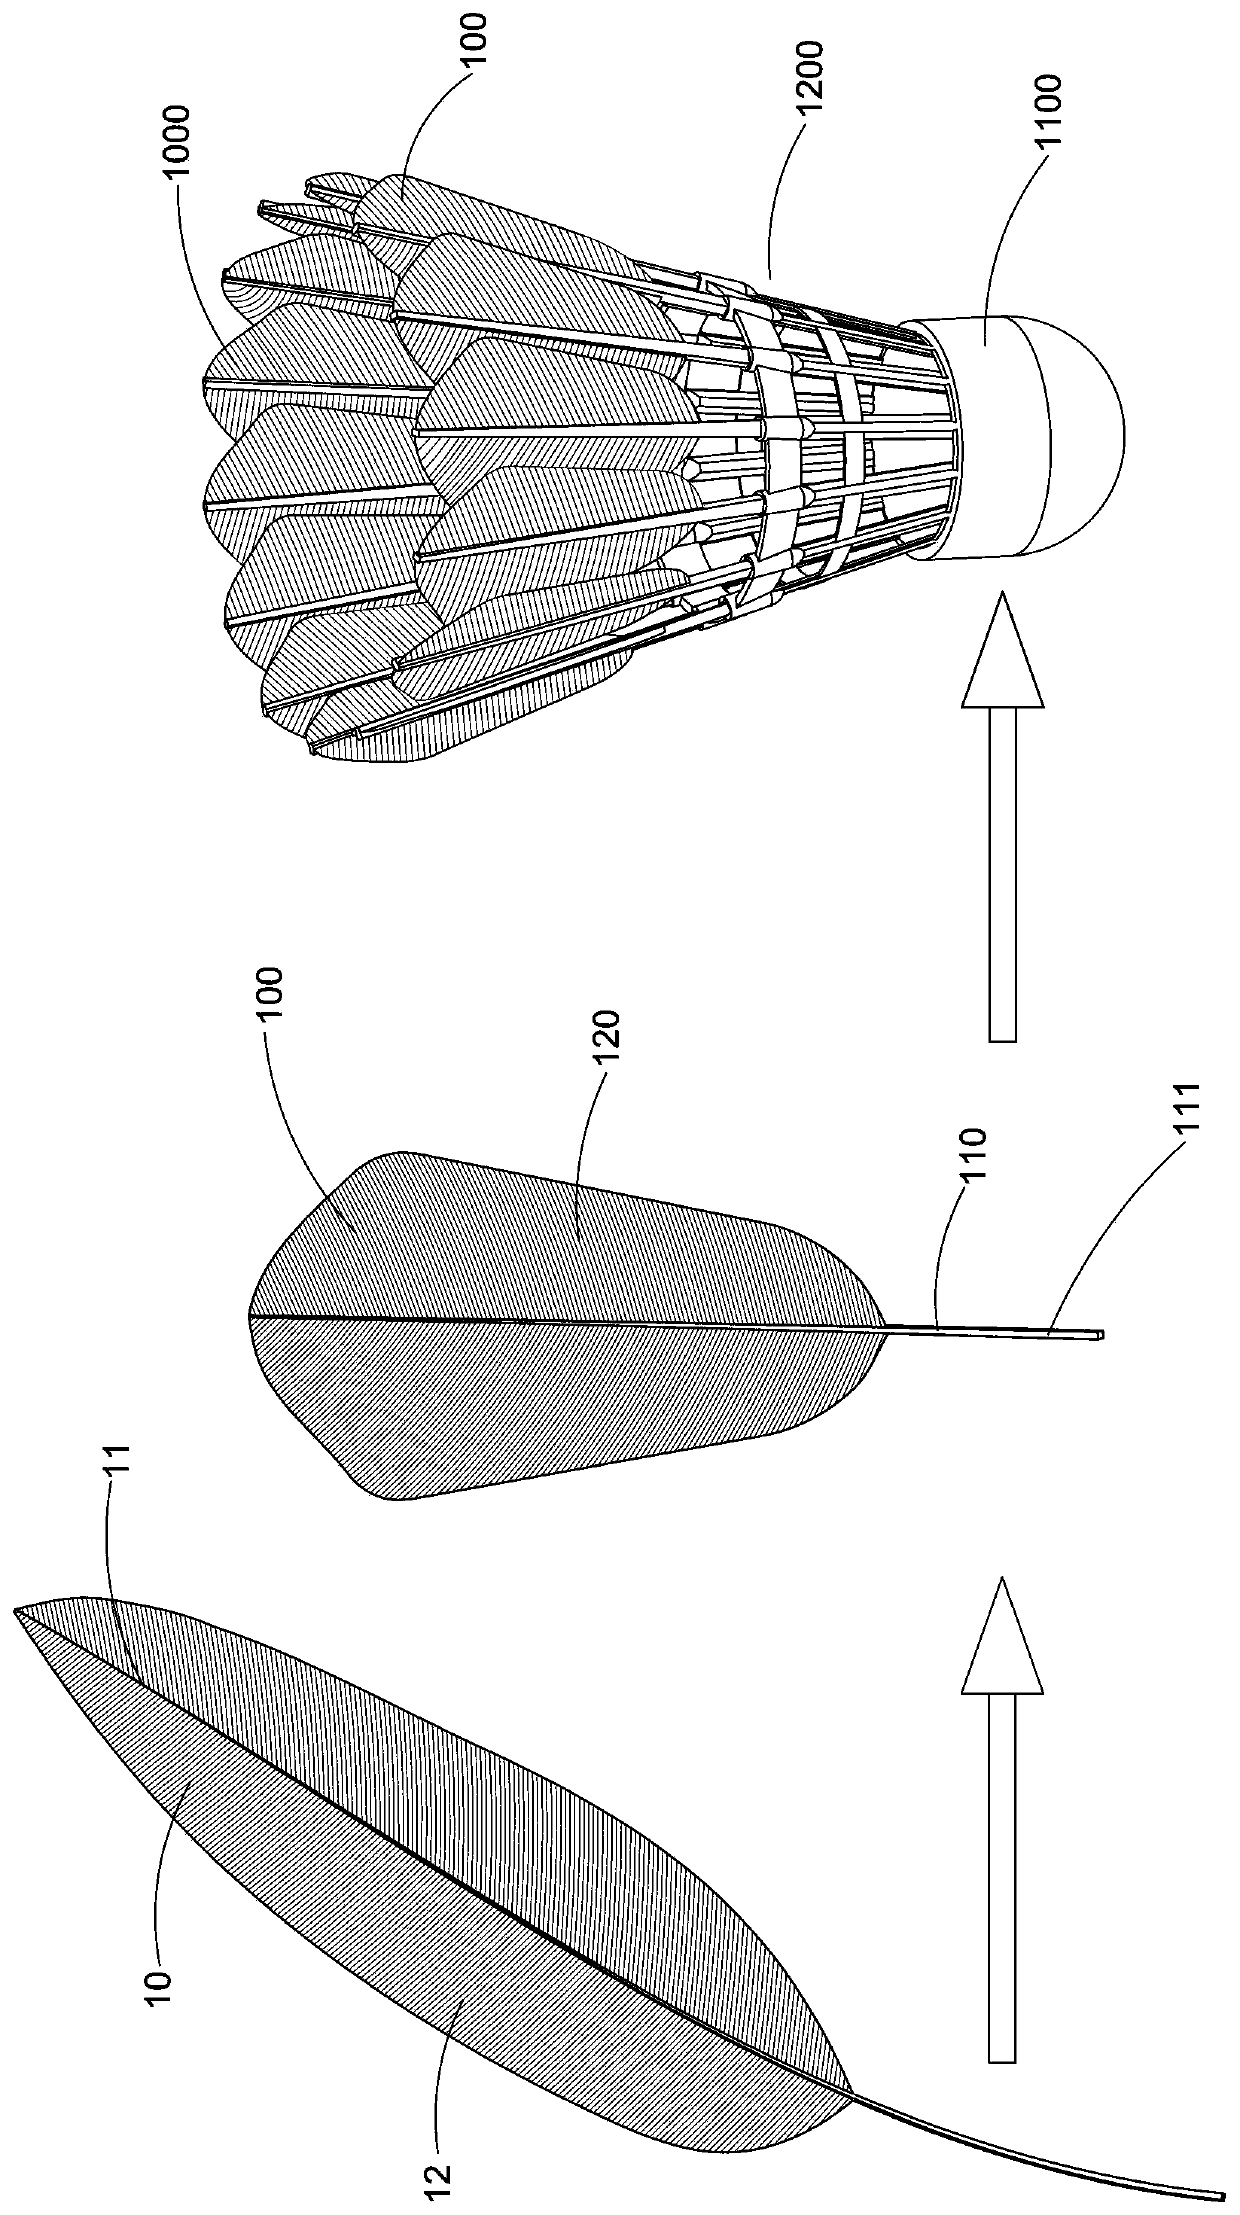 Manufacturing method of badminton